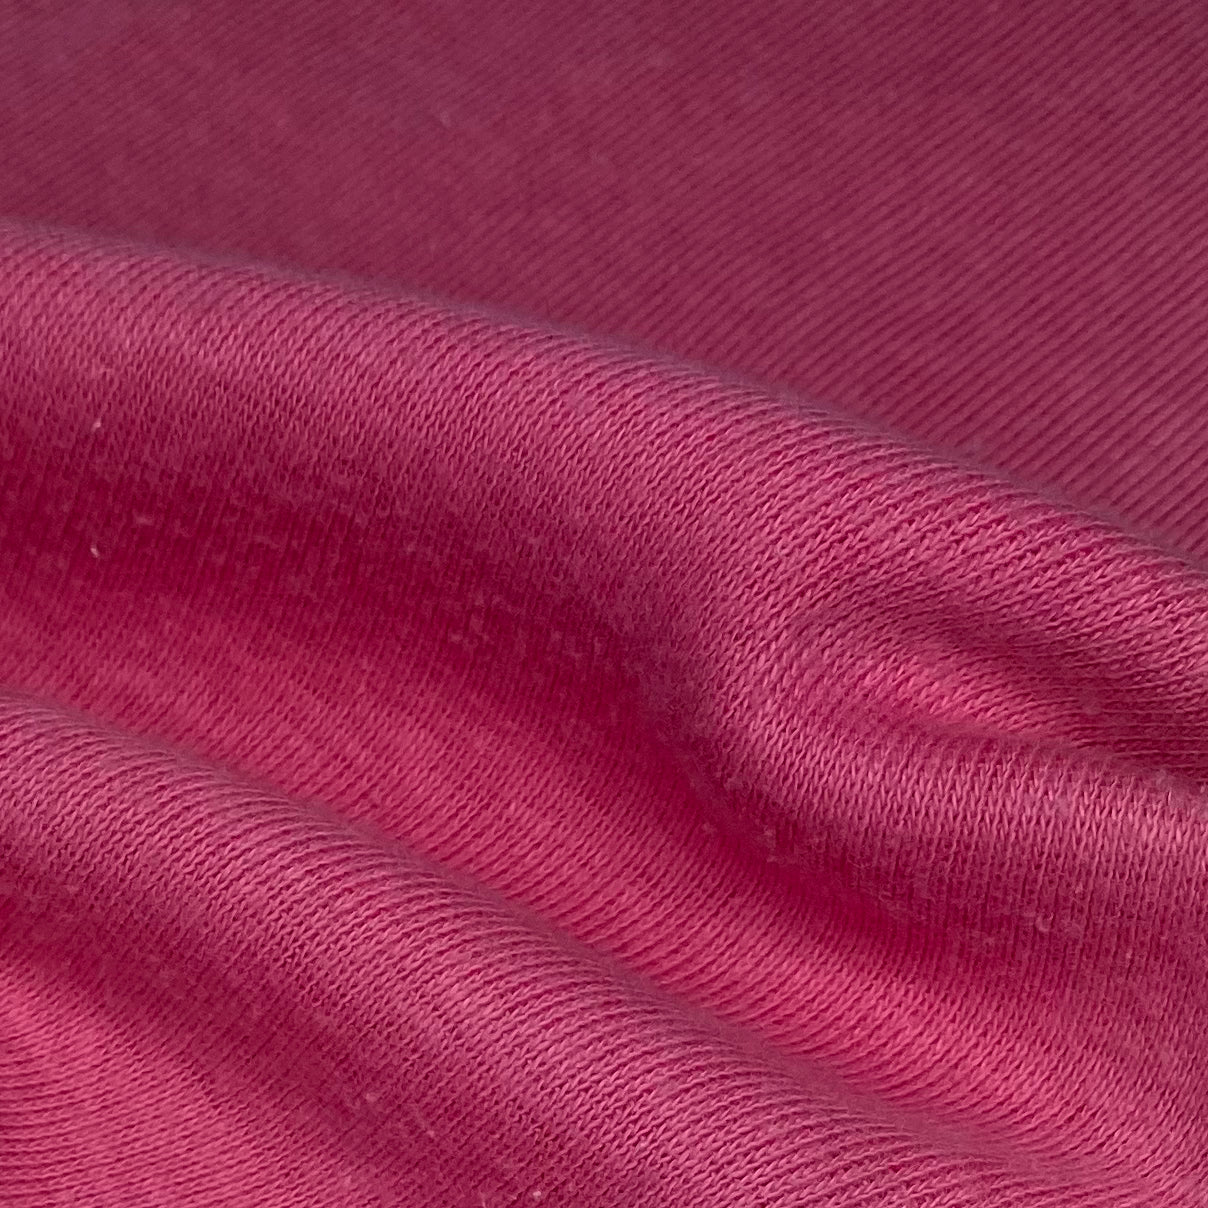 Cotton Tubular Rib Knit - Hot Pink